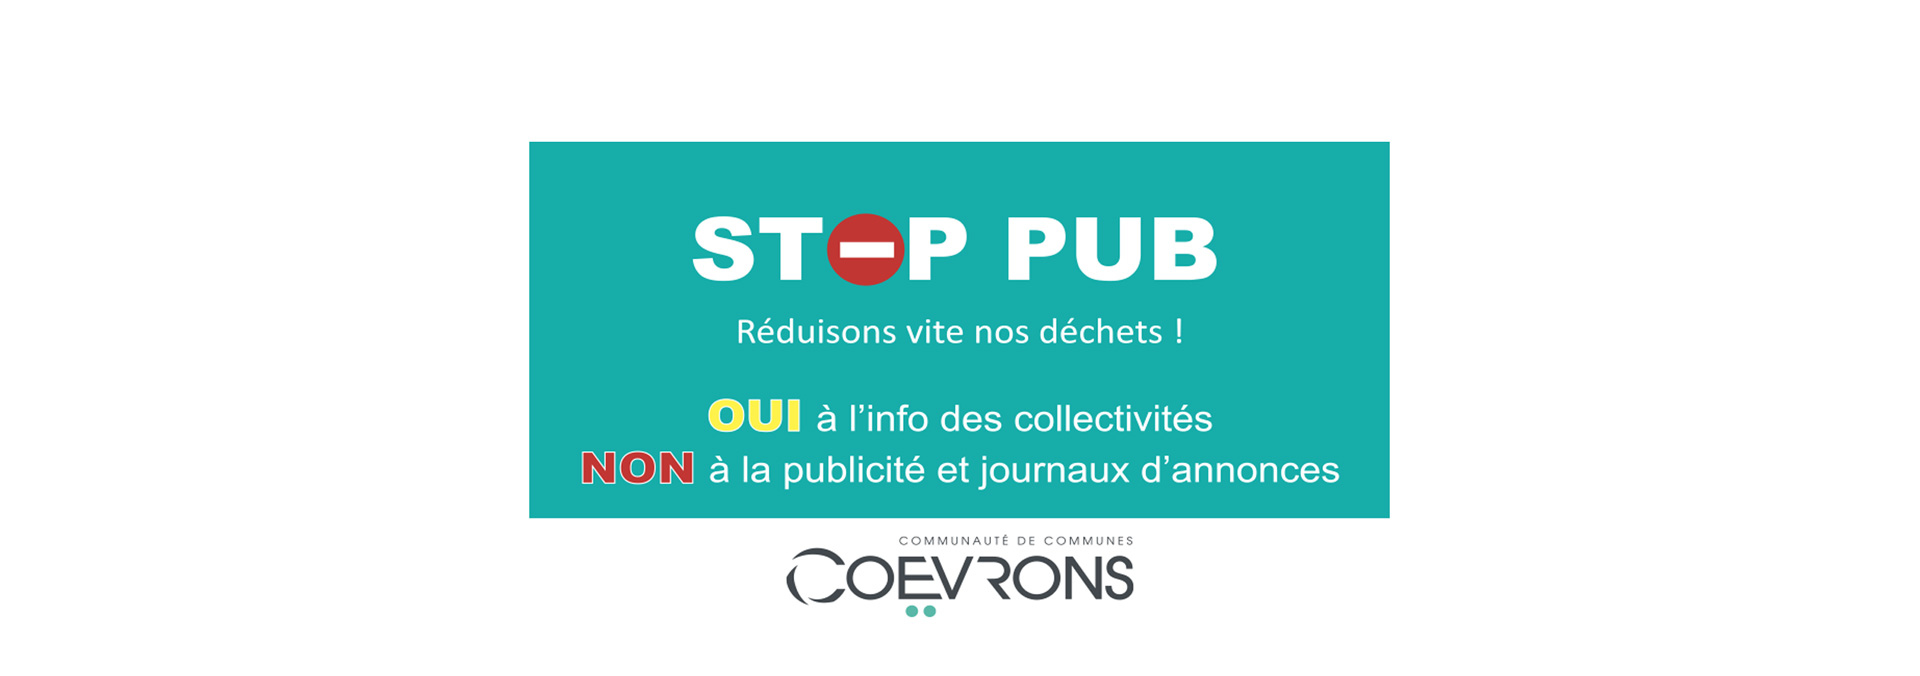 Demander un stop pub - Ville d'Évron